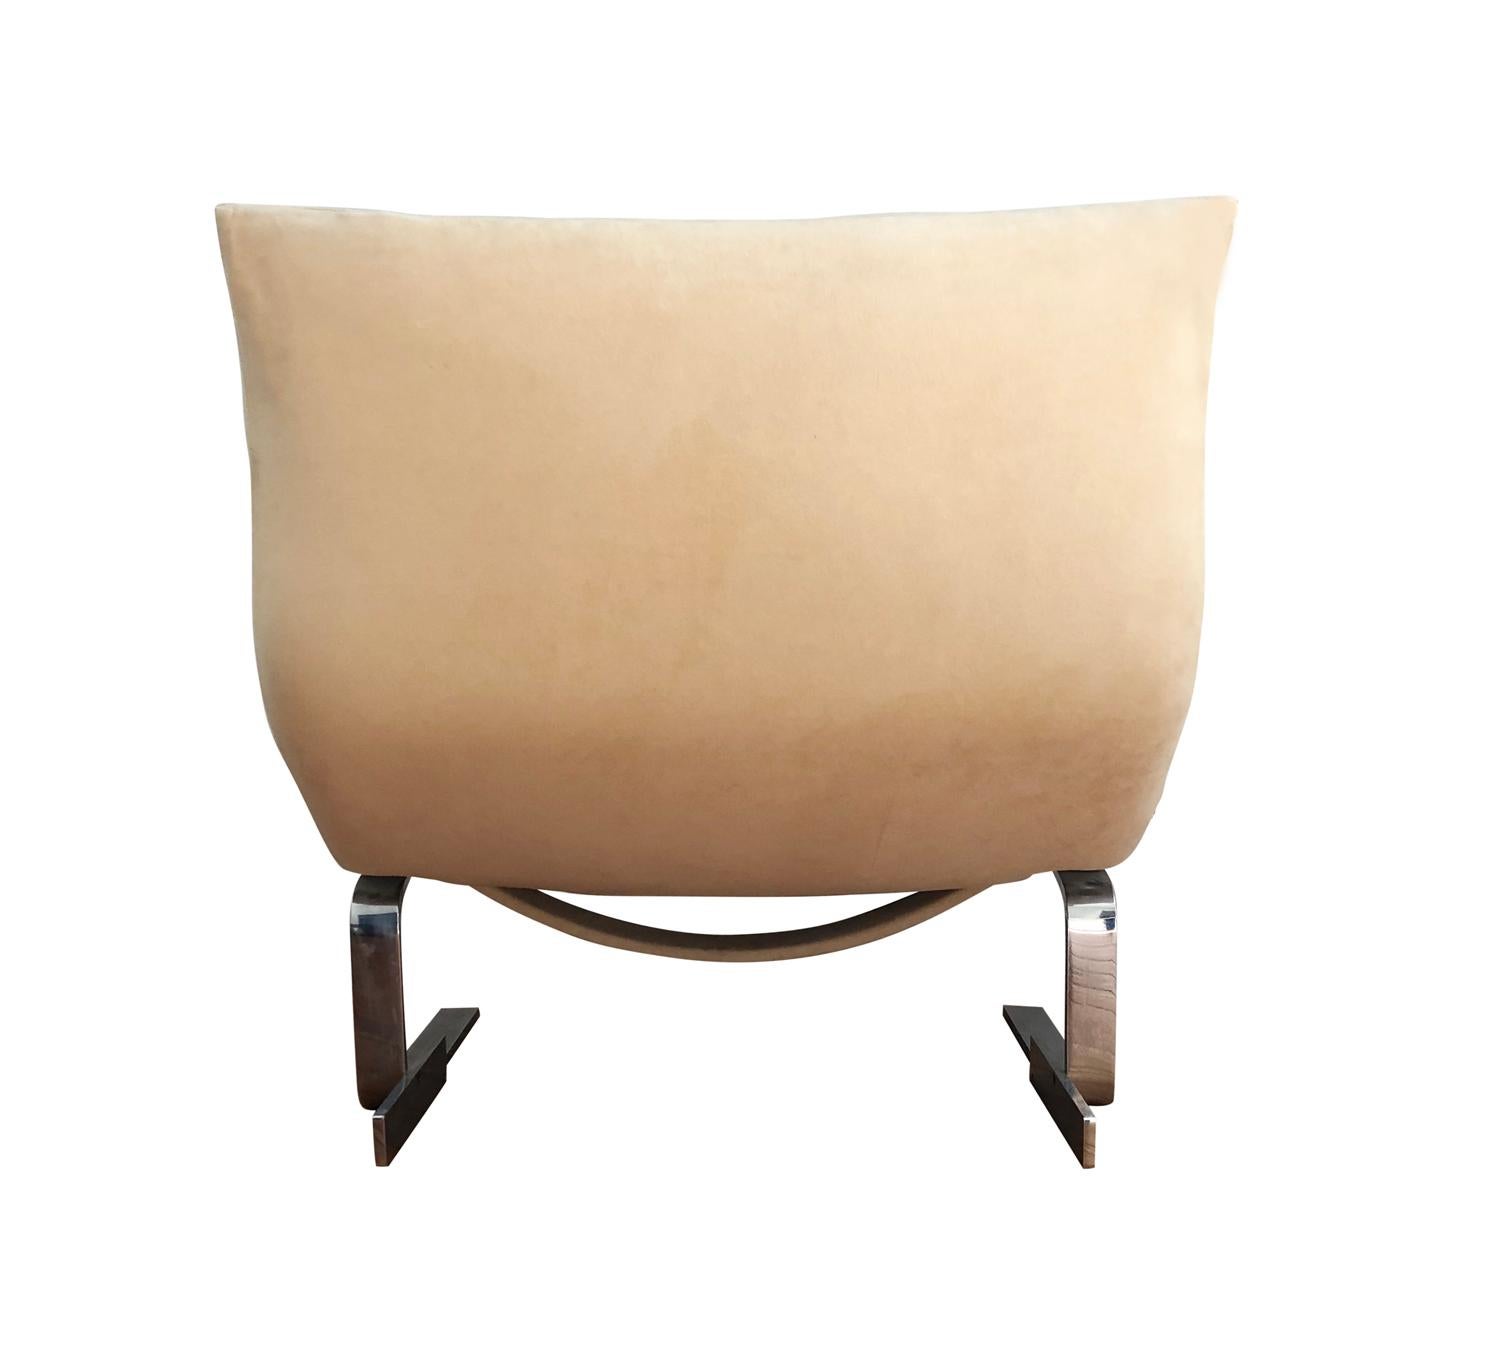 Pair of Midcentury Italian Modern Onda Slipper Lounge Chairs by Saporiti 3